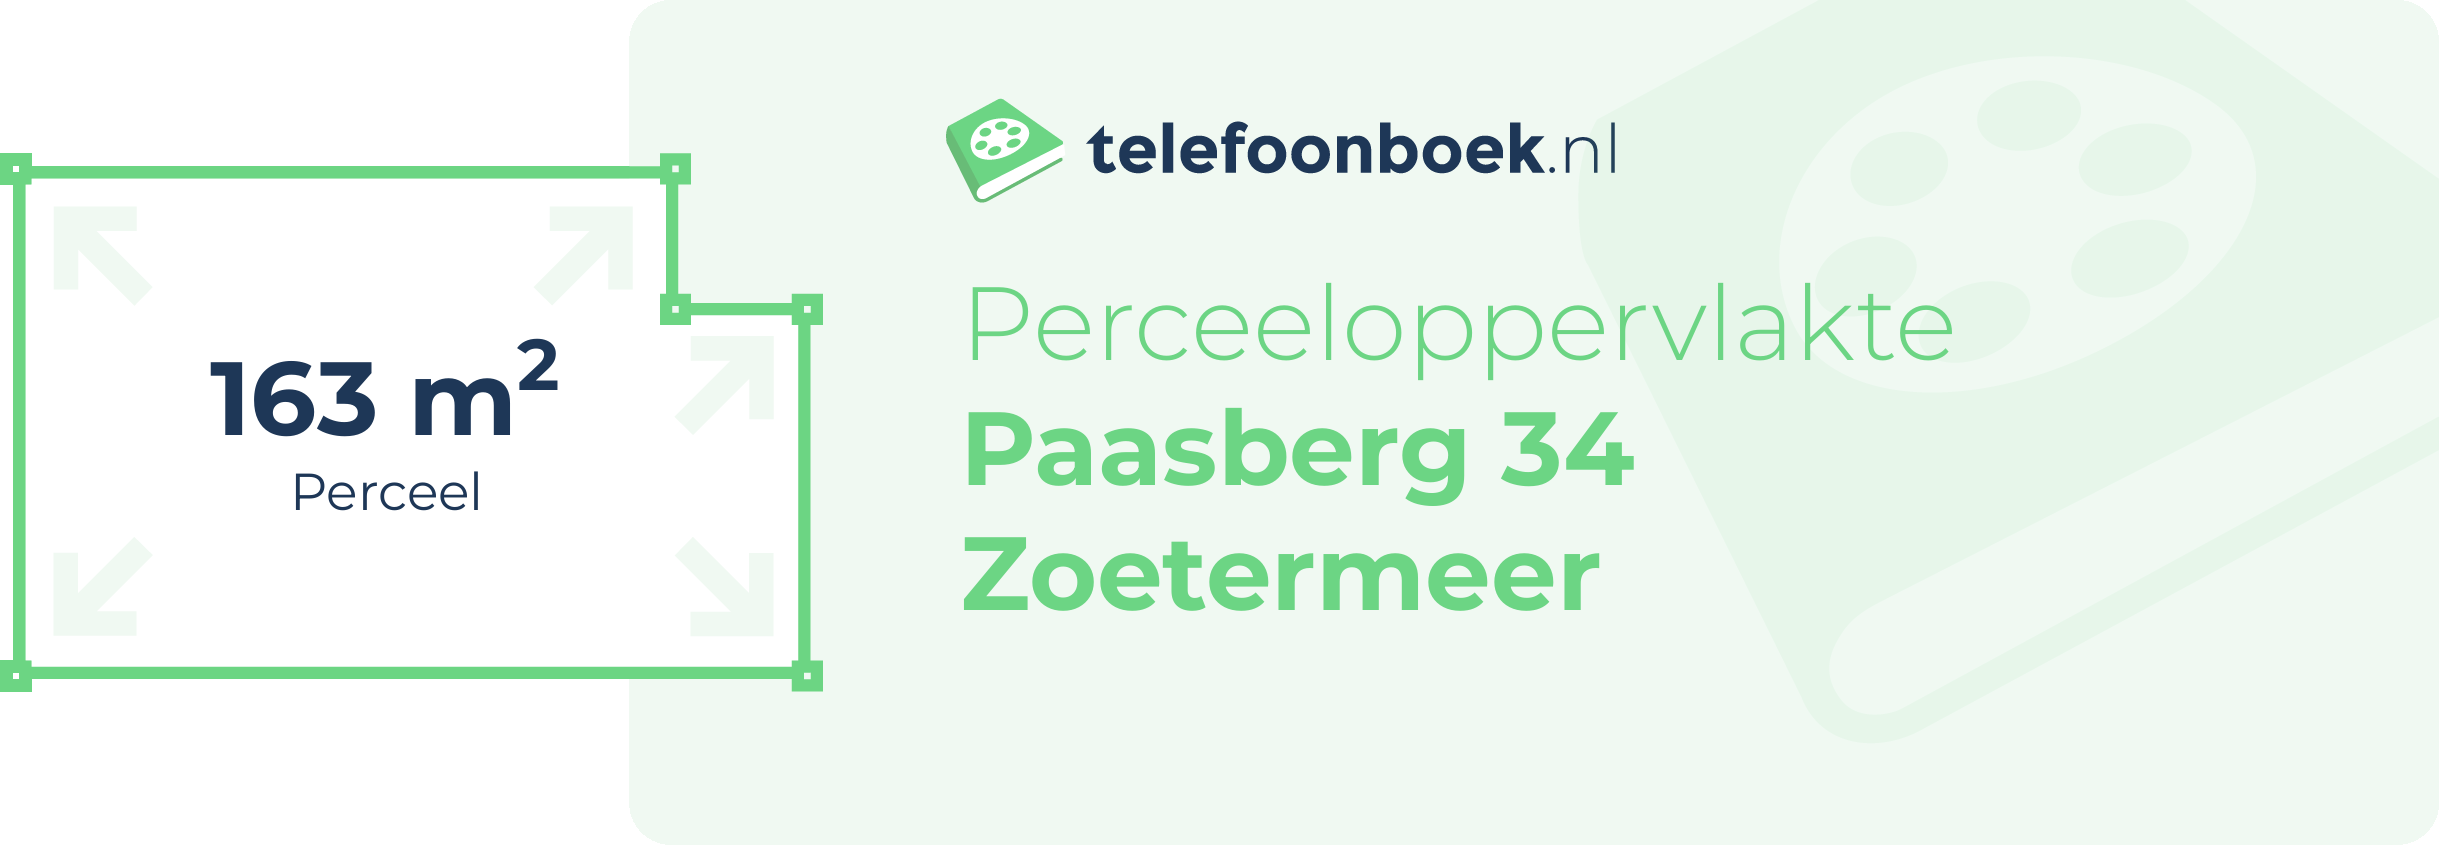 Perceeloppervlakte Paasberg 34 Zoetermeer